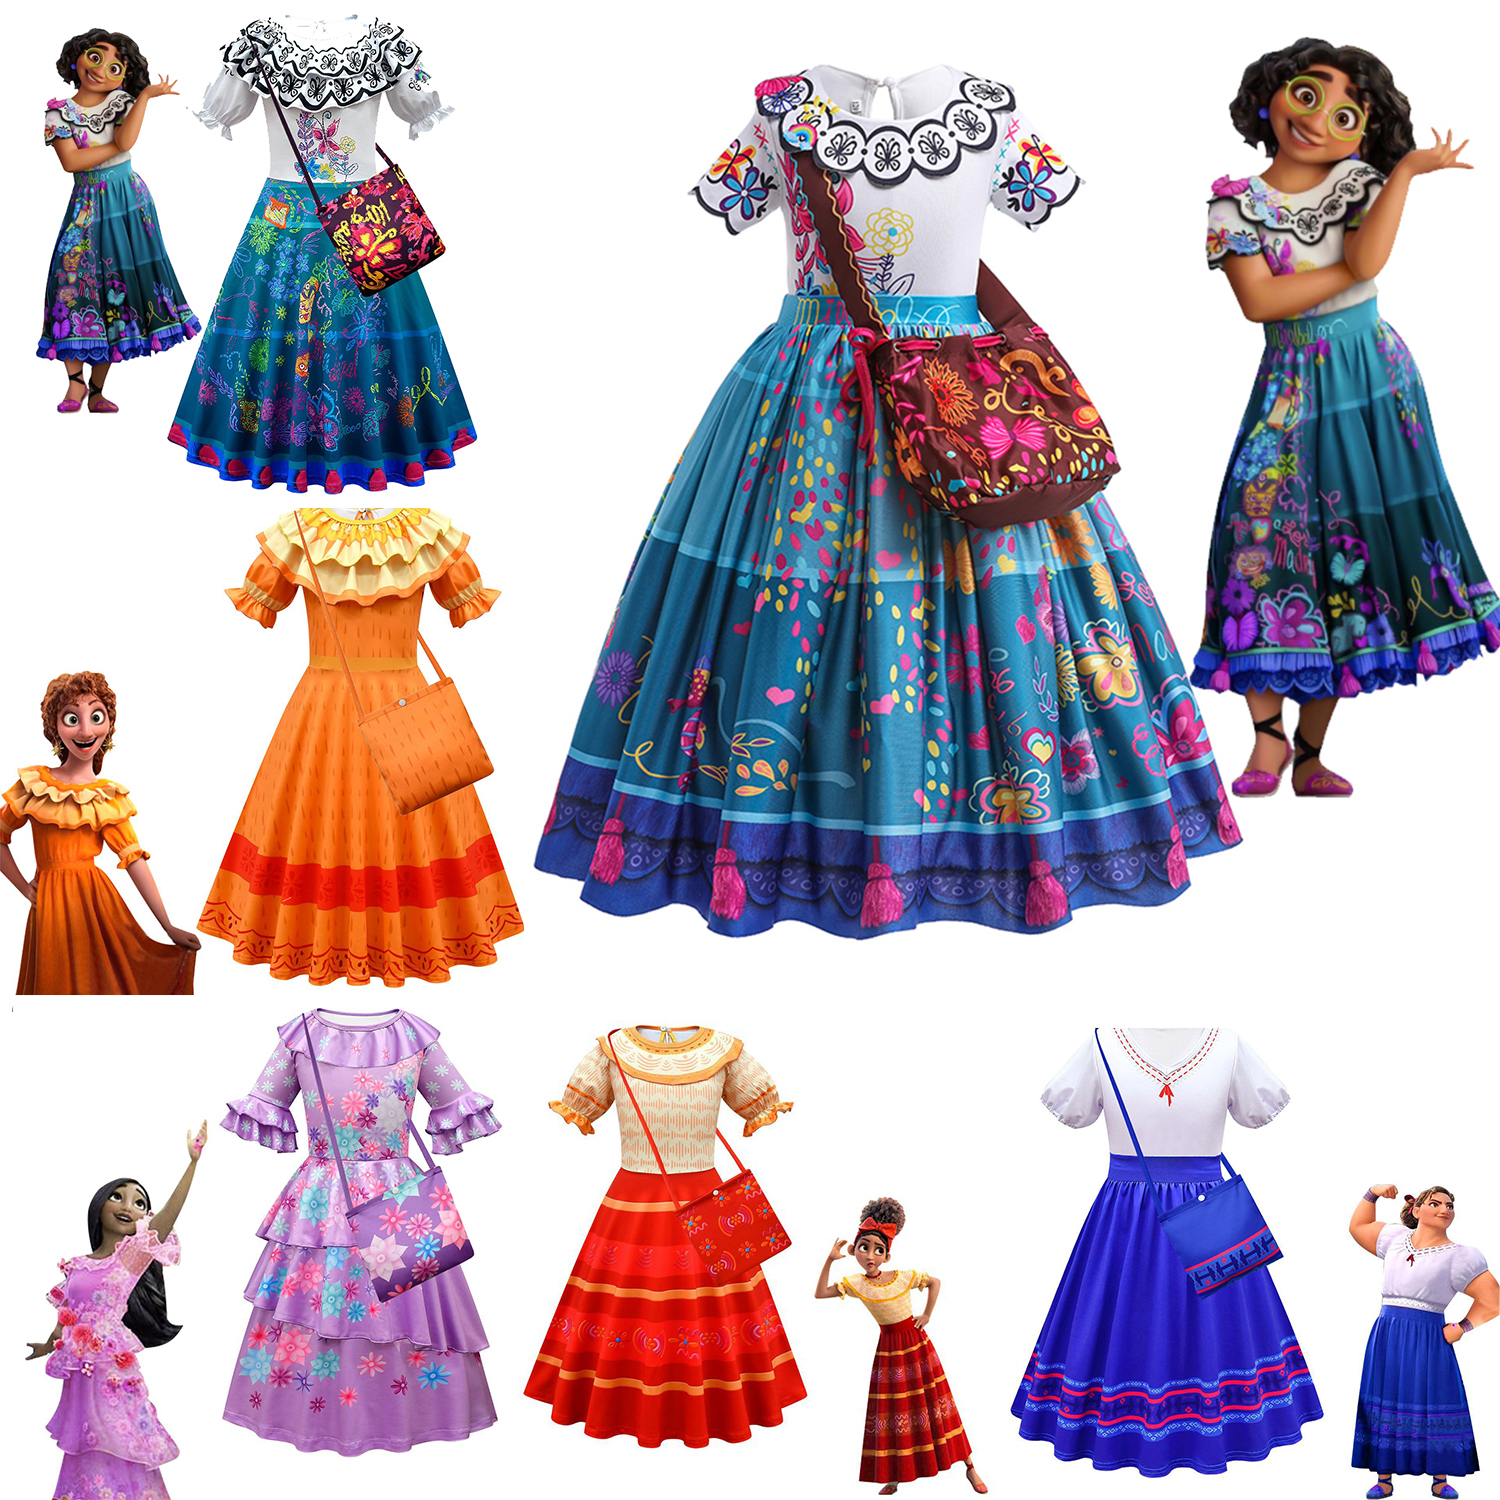 迪士尼动画电影Encanto魔法满屋圣诞节cosplay服装儿童表演连衣裙